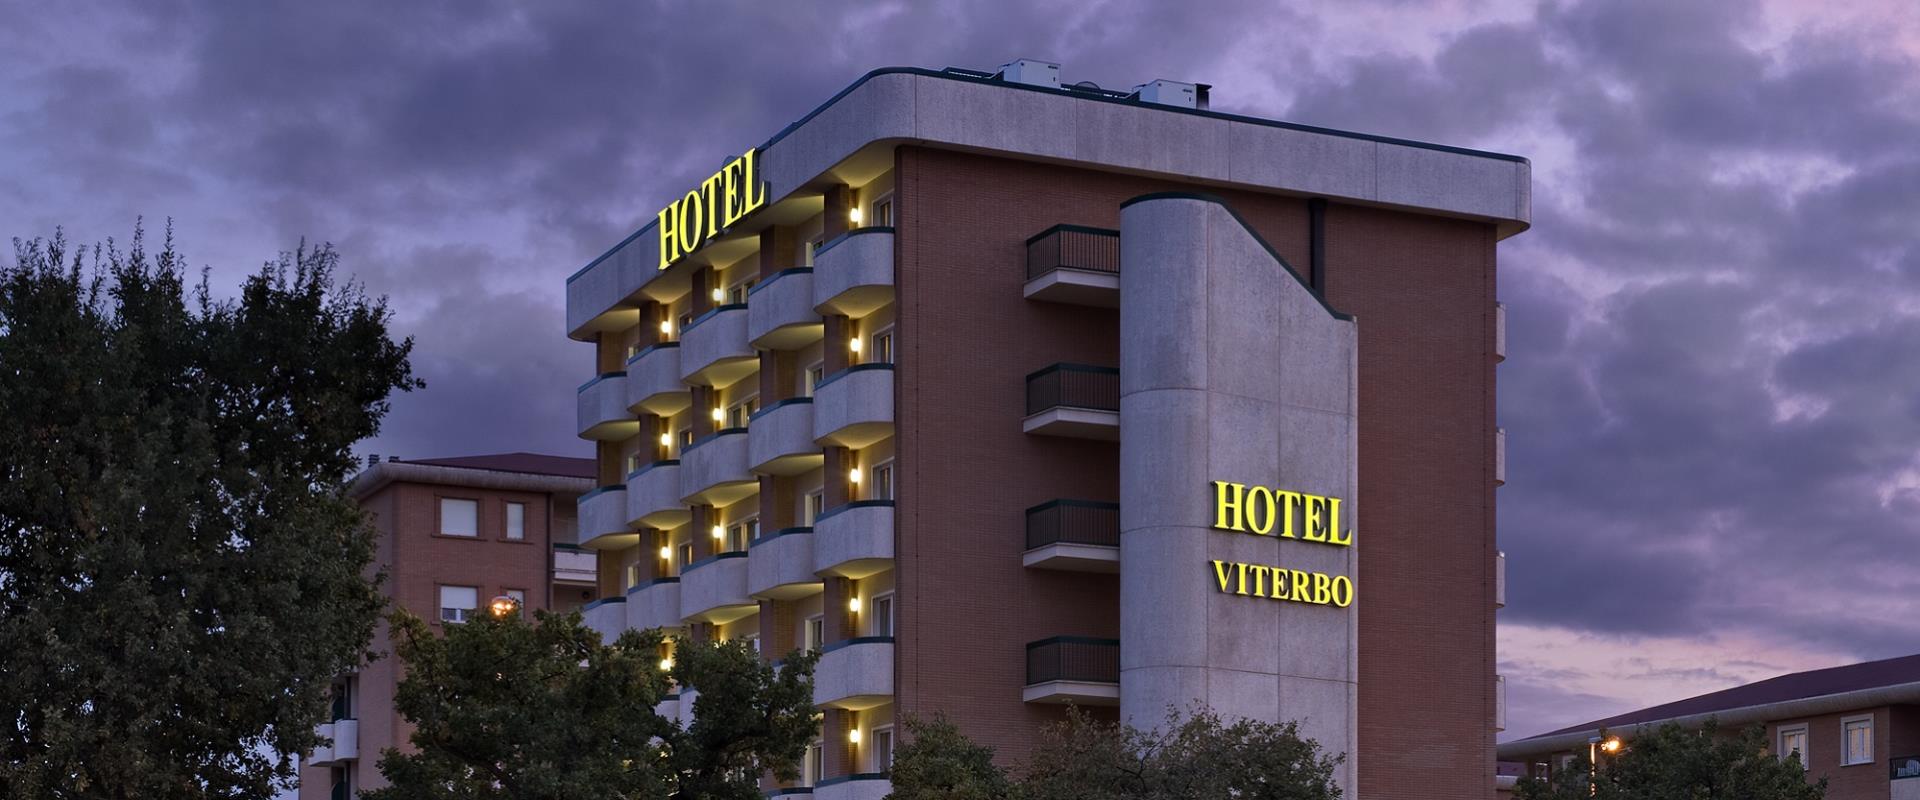 Prenota la tua camera al BW Hotel Viterbo 4 stelle